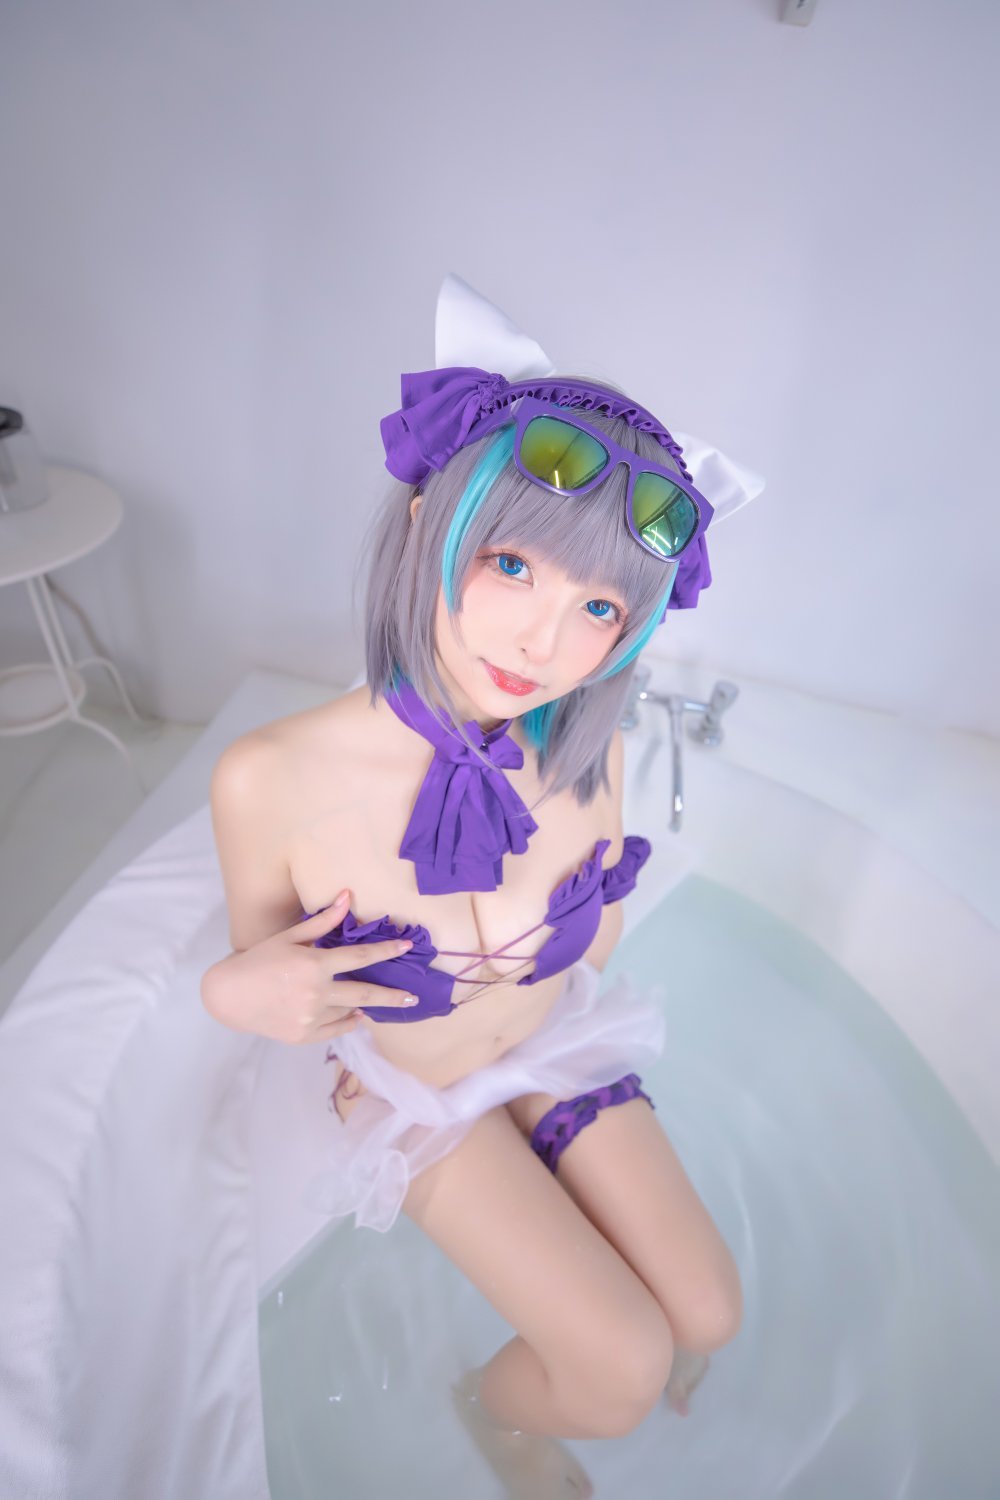 浴缸裡的可愛妹子「44P」